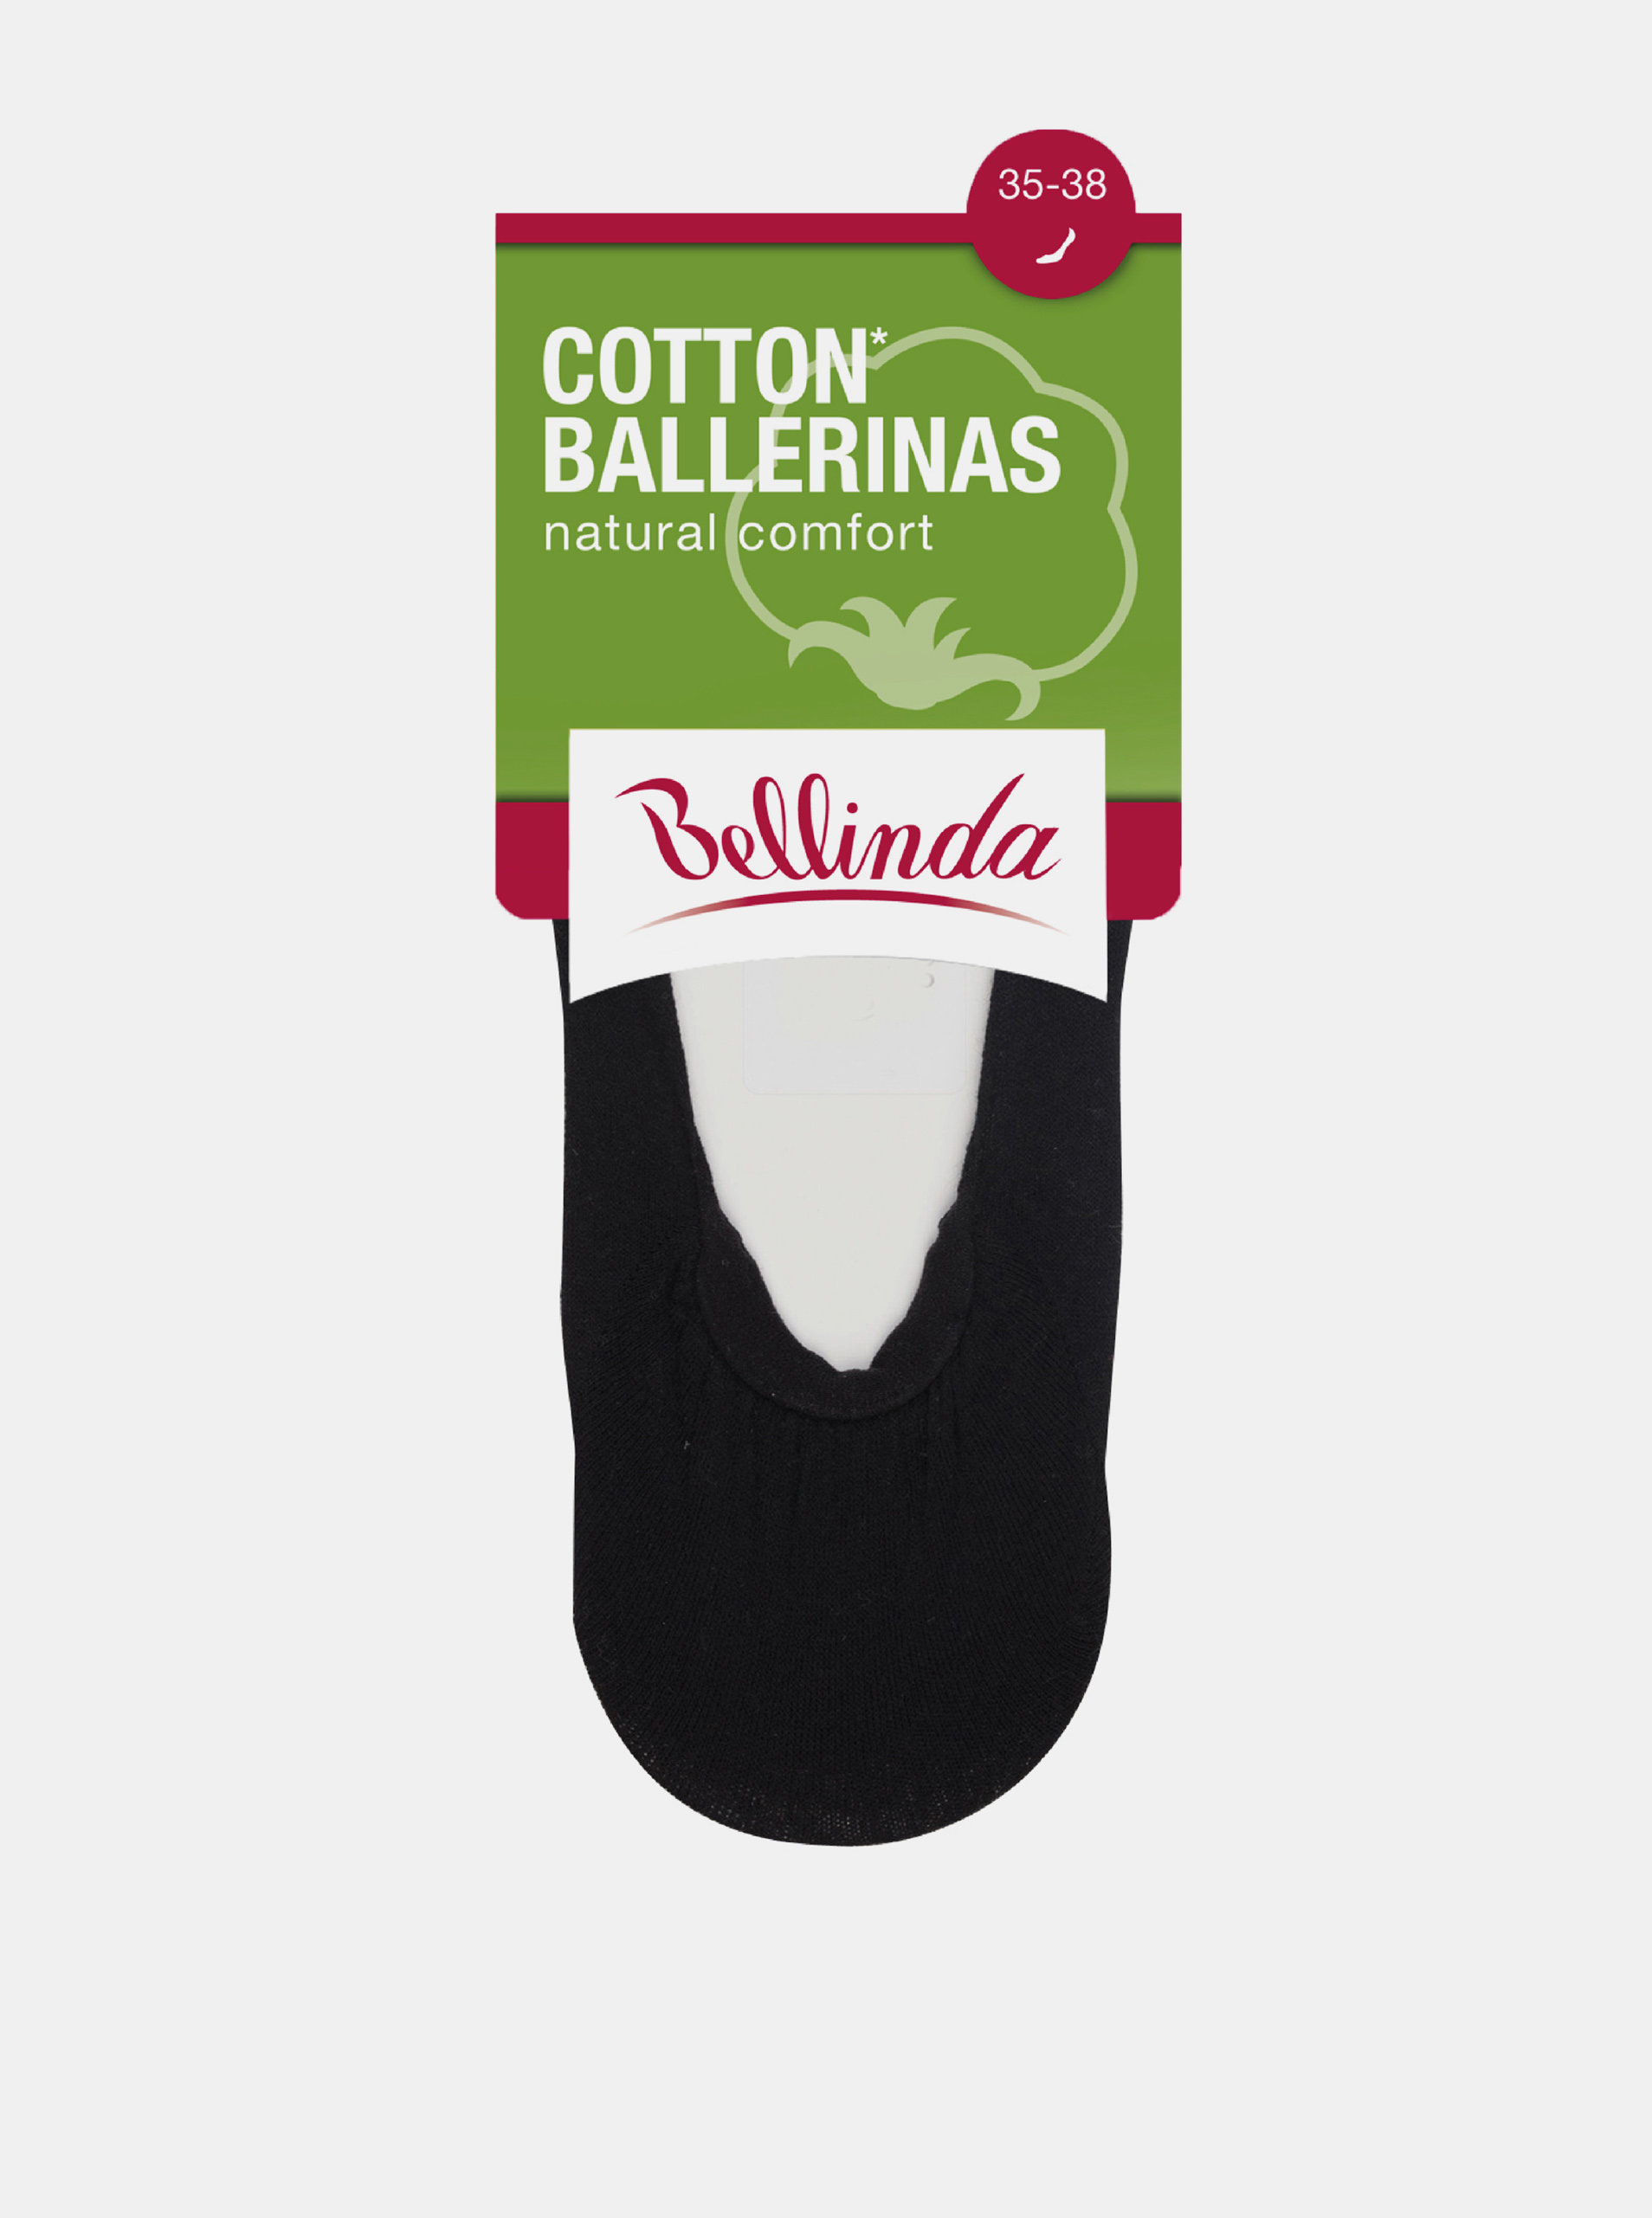 Dámské bavlněné balerínky COTTON BALLERINAS - Dámské bavlněné ponožky vhodné do balerínek - amber